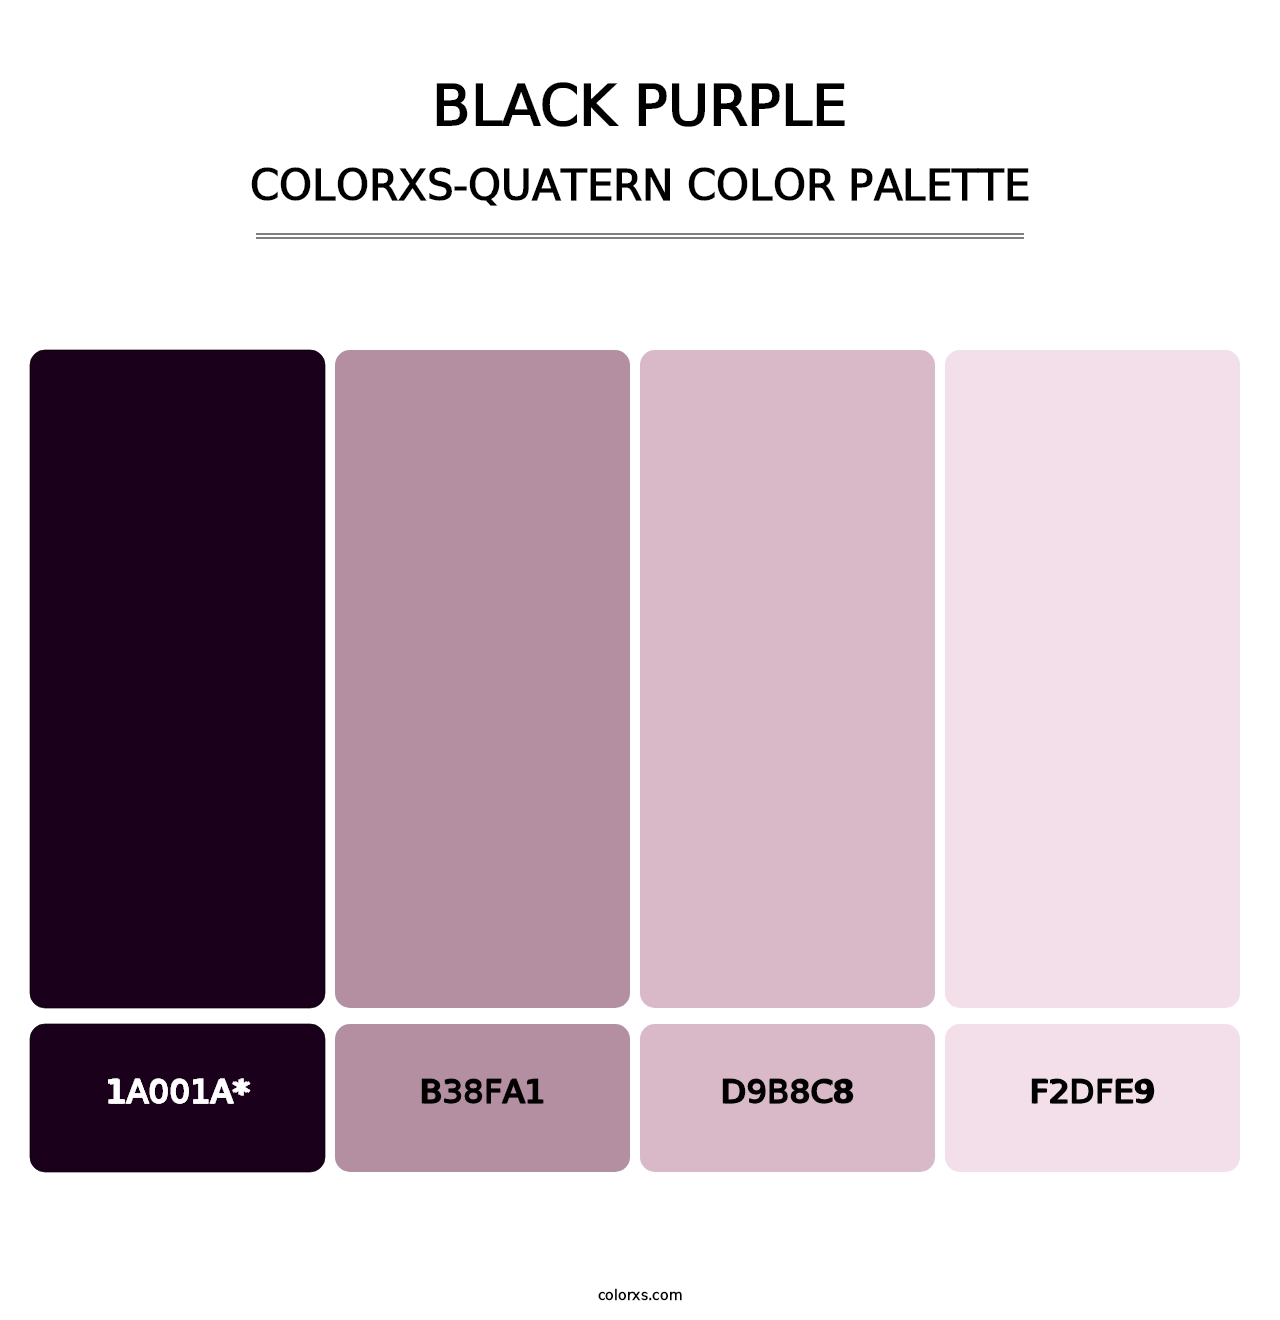 Black Purple - Colorxs Quatern Palette